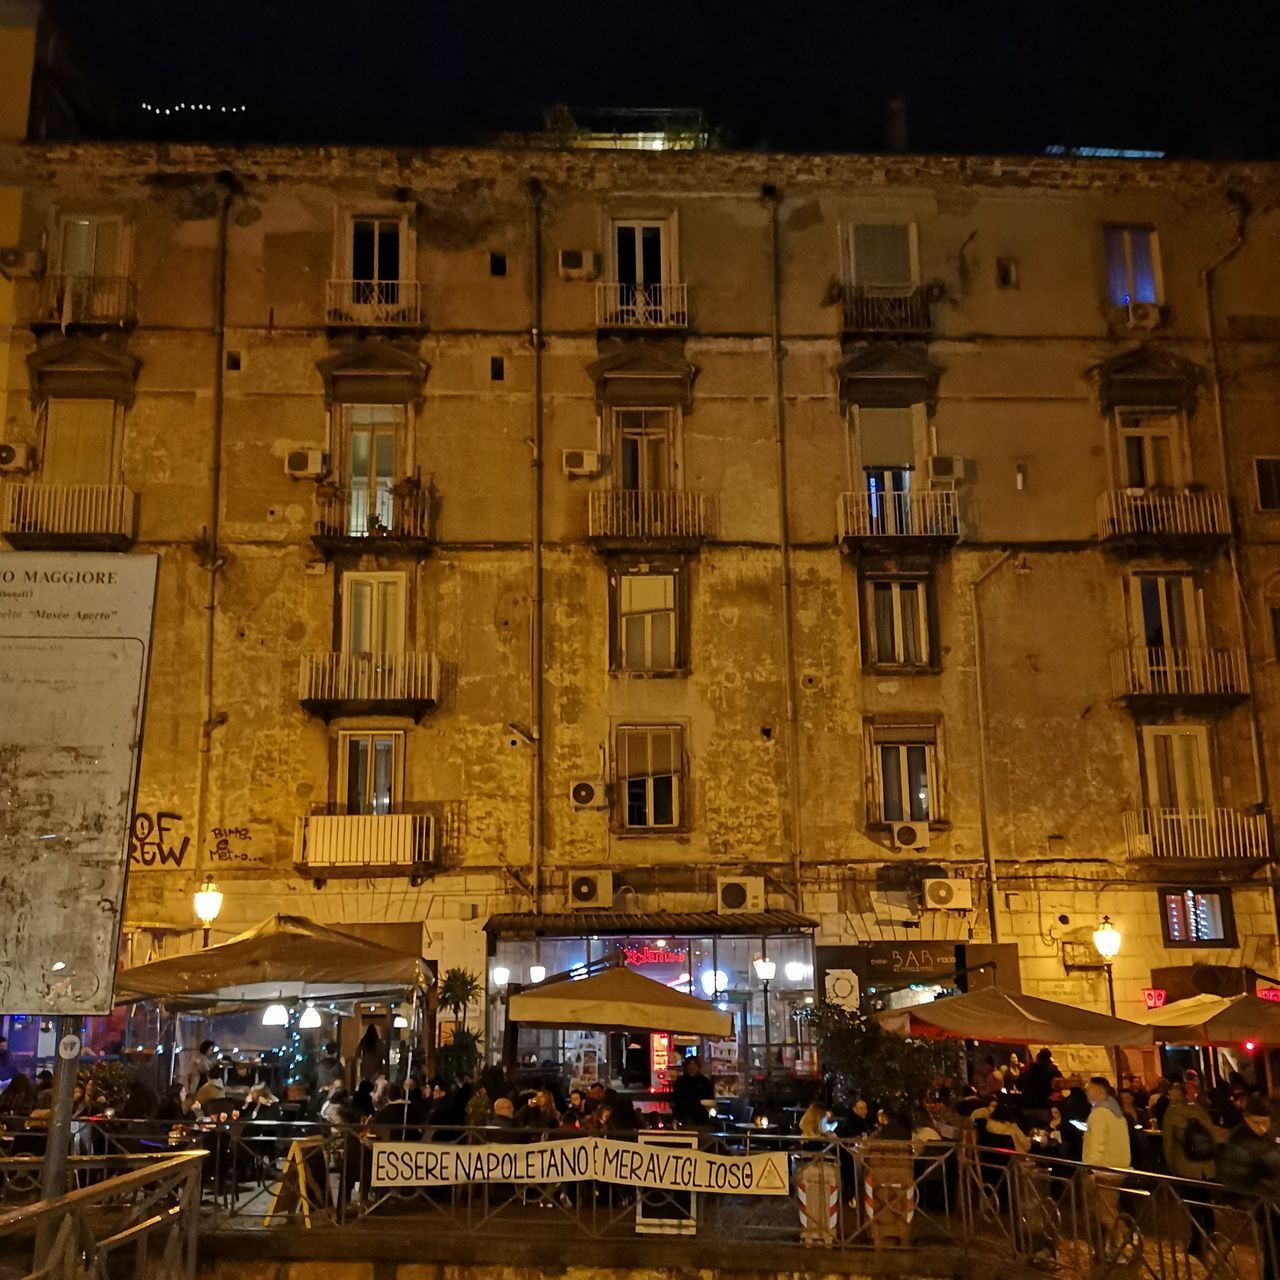 PEOPLE ON STREET AGAINST ILLUMINATED BUILDINGS AT NIGHT